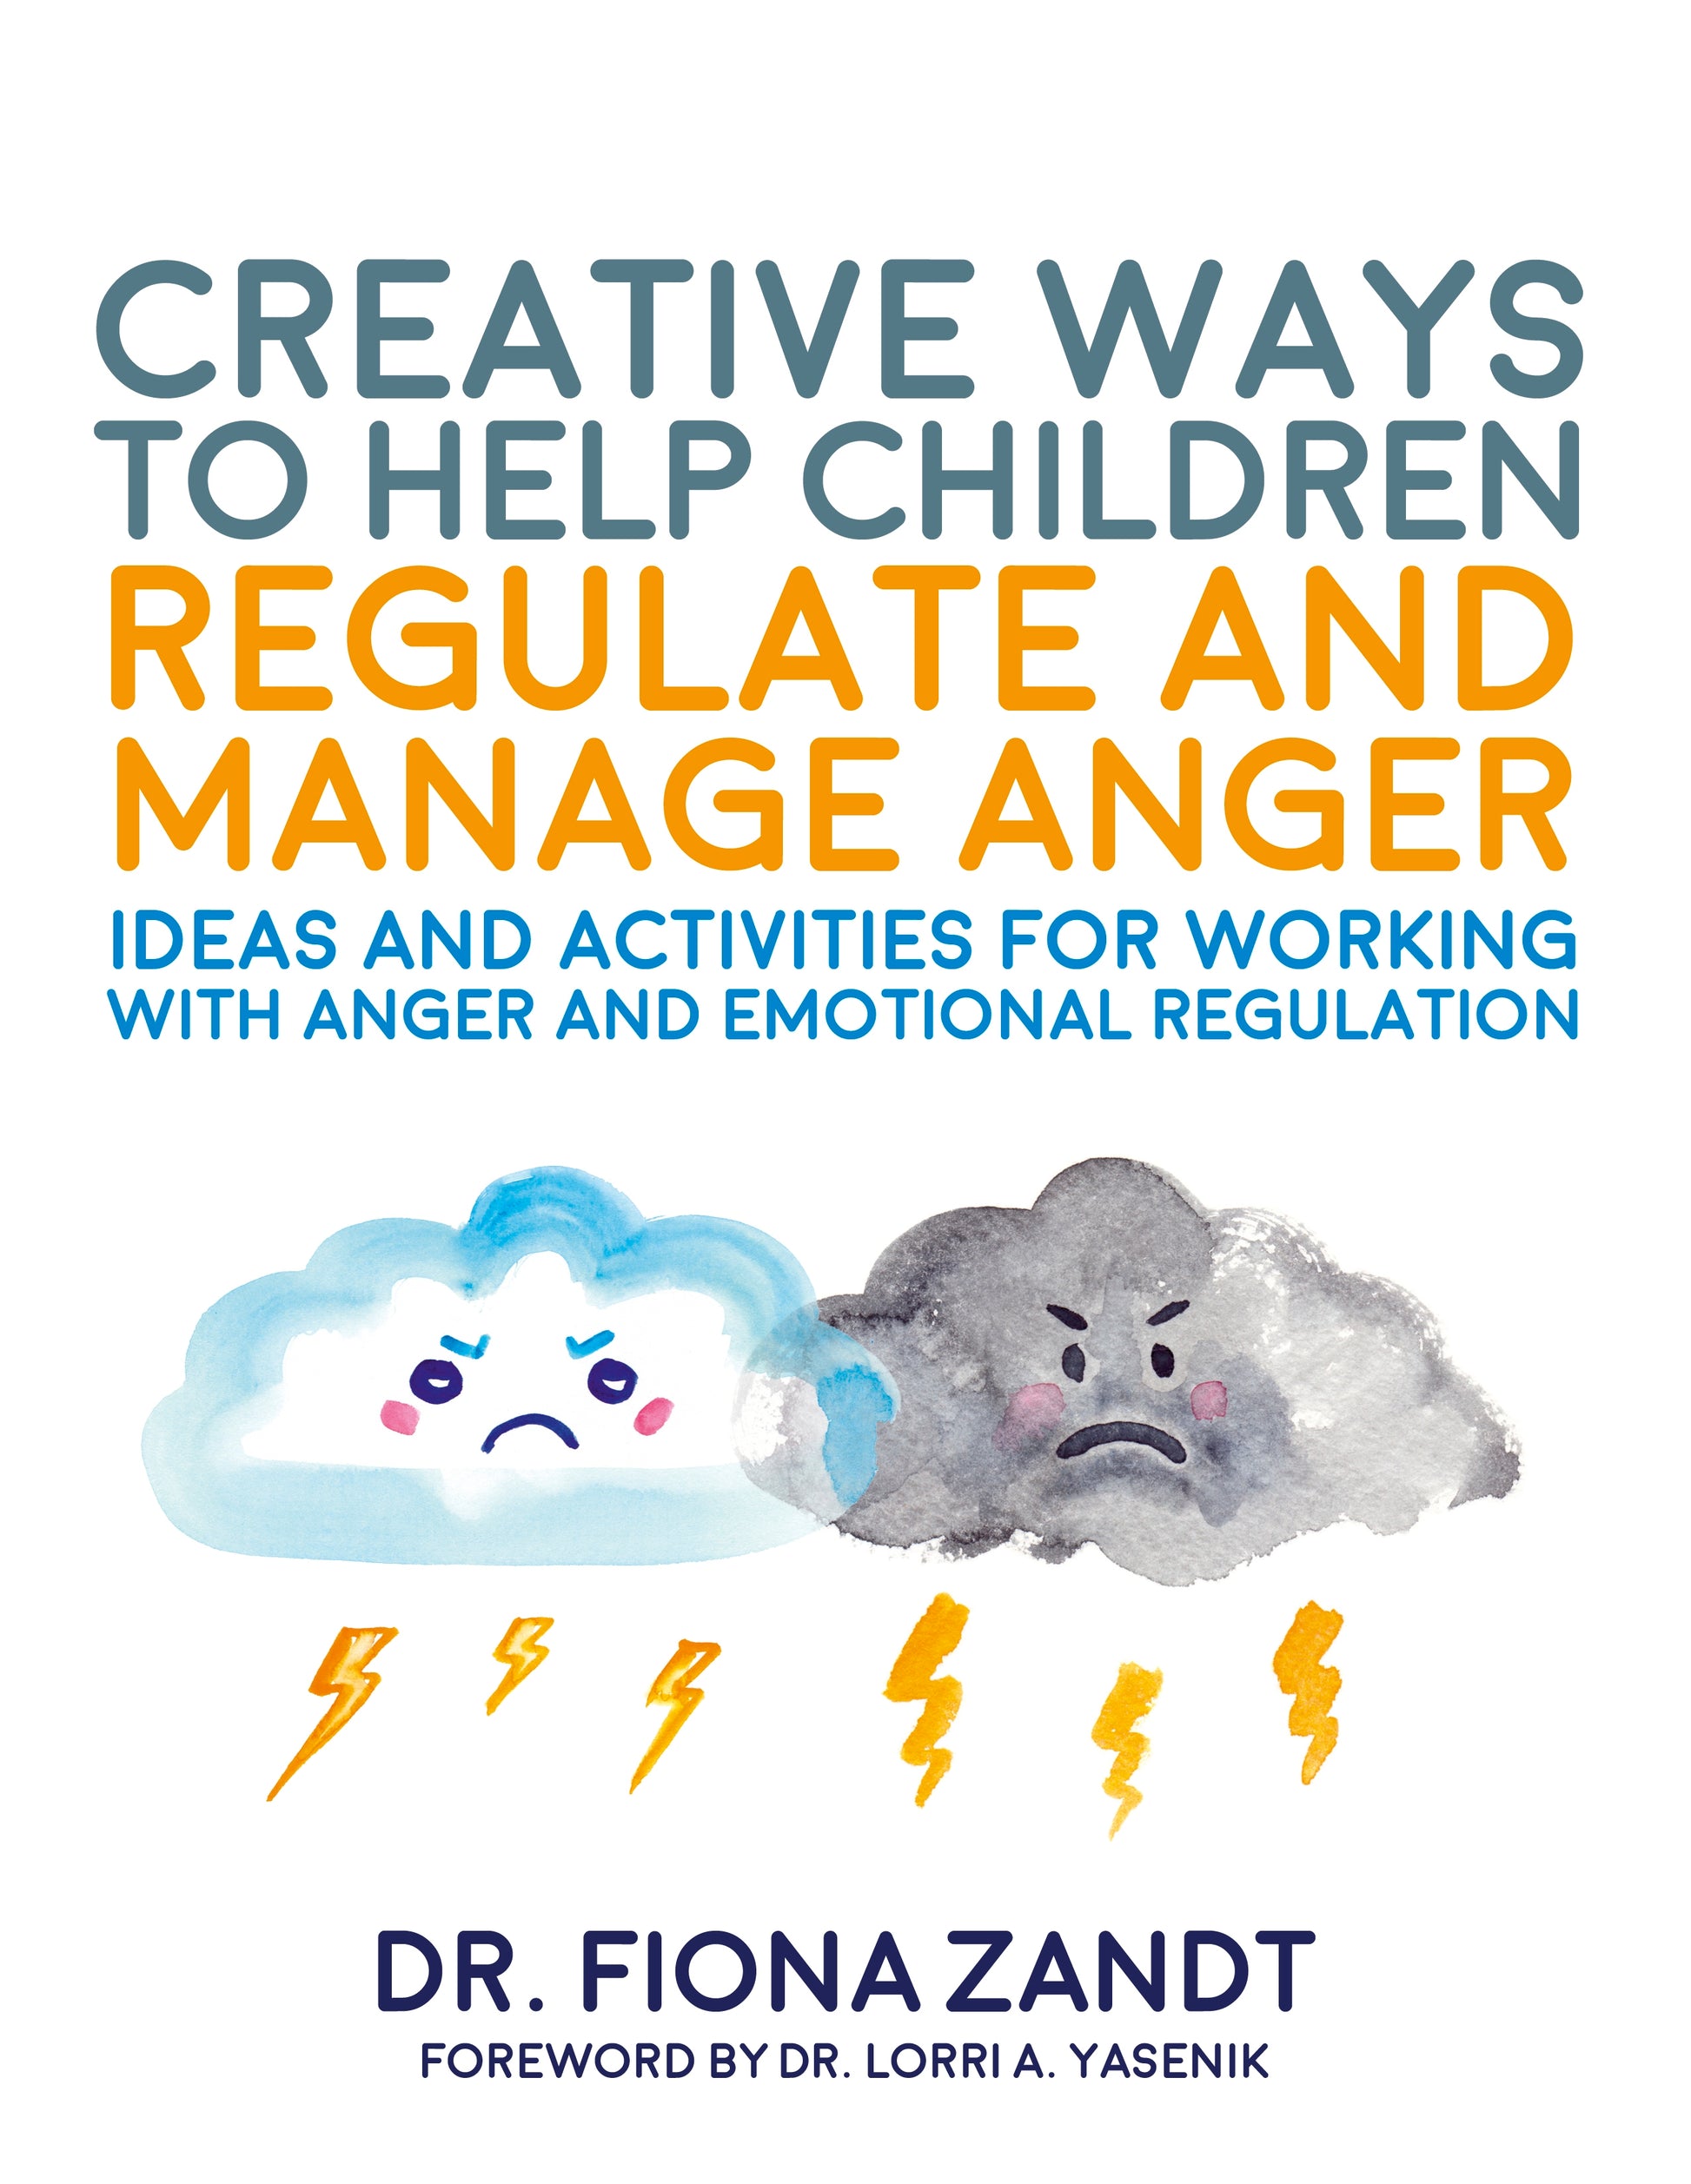 Creative Ways to Help Children Regulate and Manage Anger by Richy K. Chandler, Lorri Yasenik, Fiona Zandt